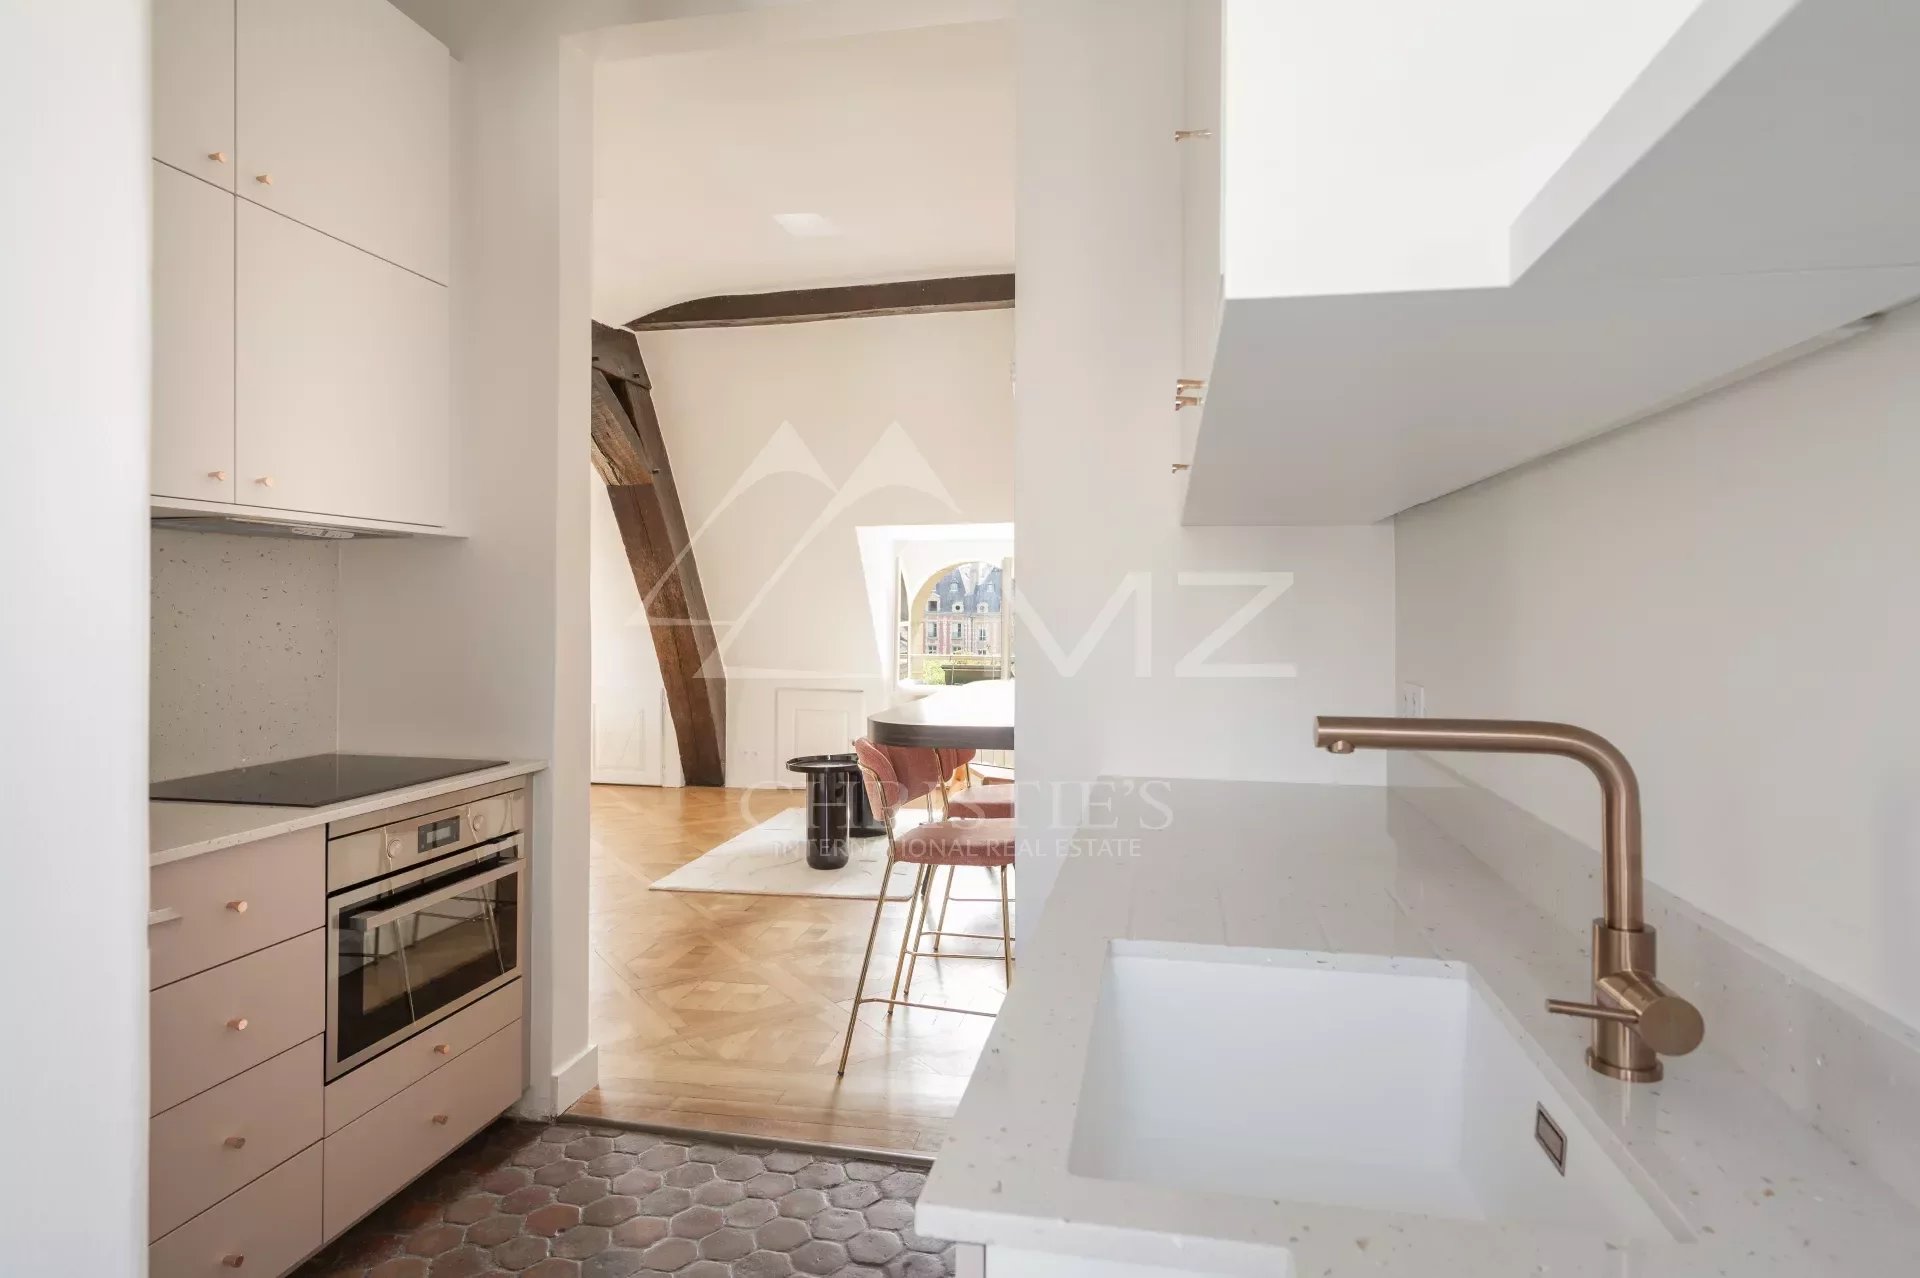 Verkauf Wohnung - Paris 75004 - Place des Vosges - Oberste Etage - Renoviert